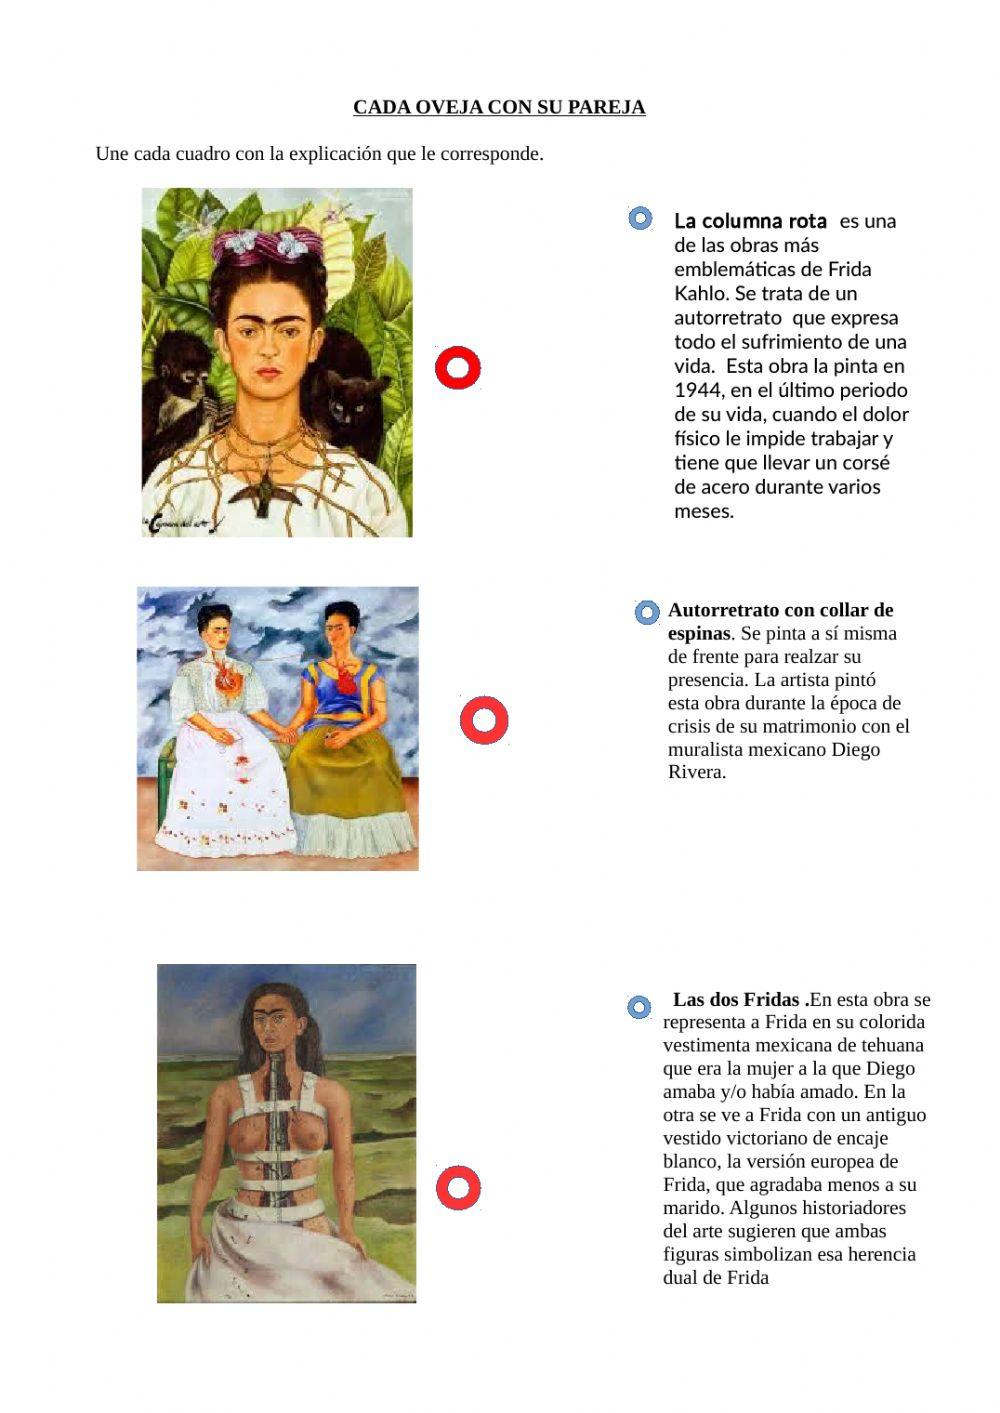 Obras de Frida Kahlo, cada oveja con su pareja.